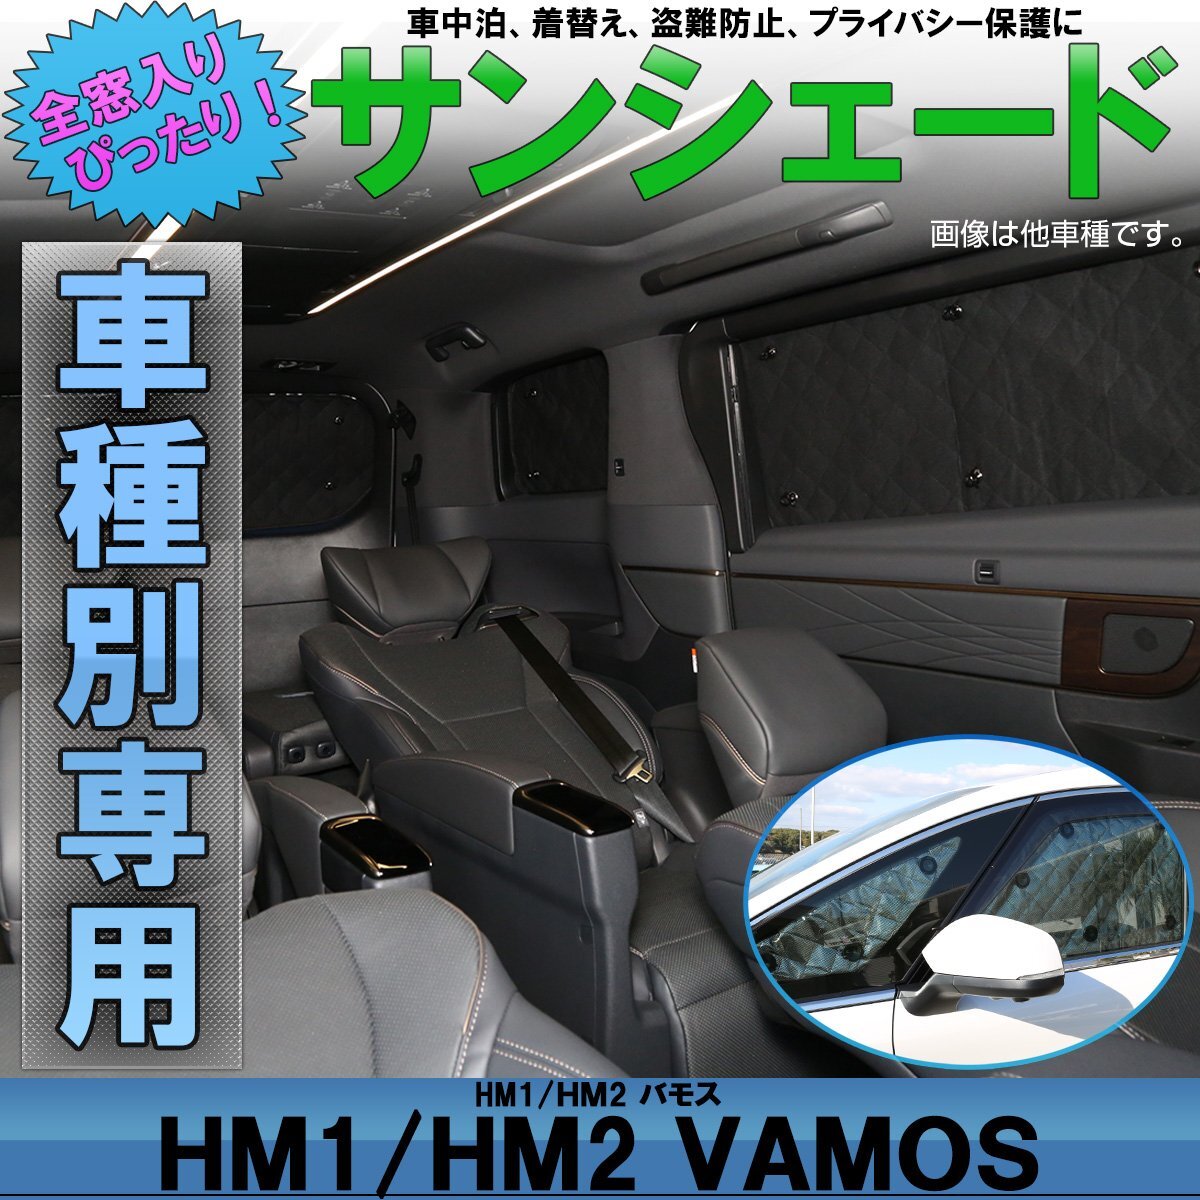 HM1 HM2 バモス 専用設計 サンシェード全窓用セット 5層構造 ブラックメッシュ 車中泊 プライバシー保護に S-637_画像1